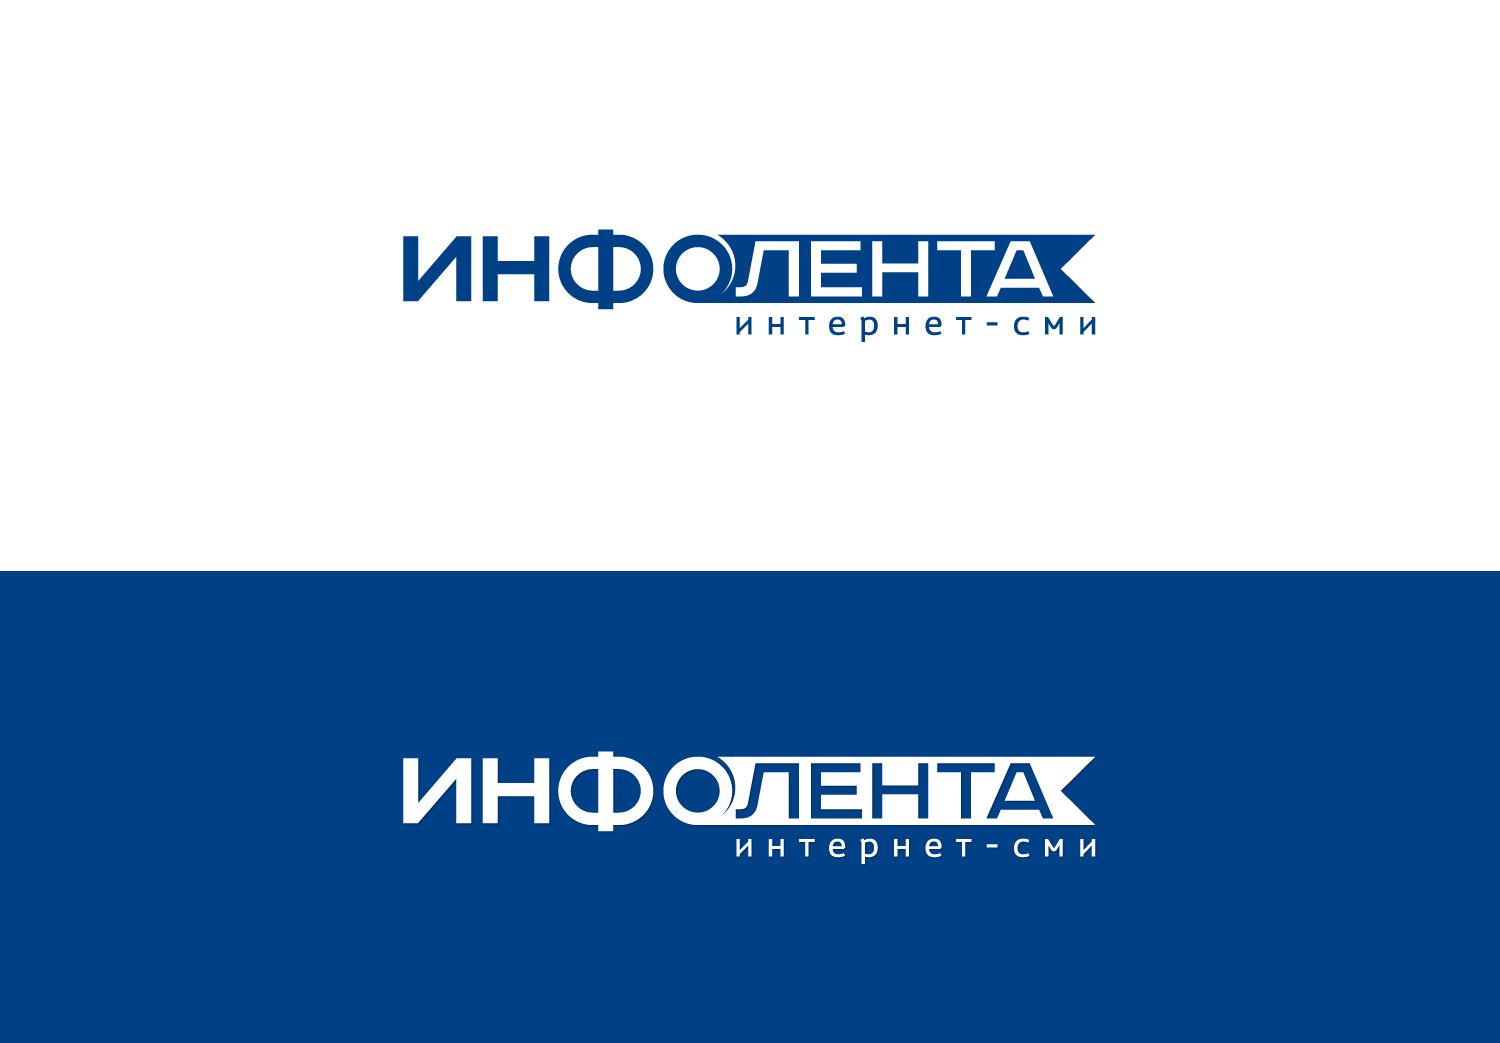 Логотип + цветовой стиль для сайта  интернет-СМИ  - дизайнер mz777